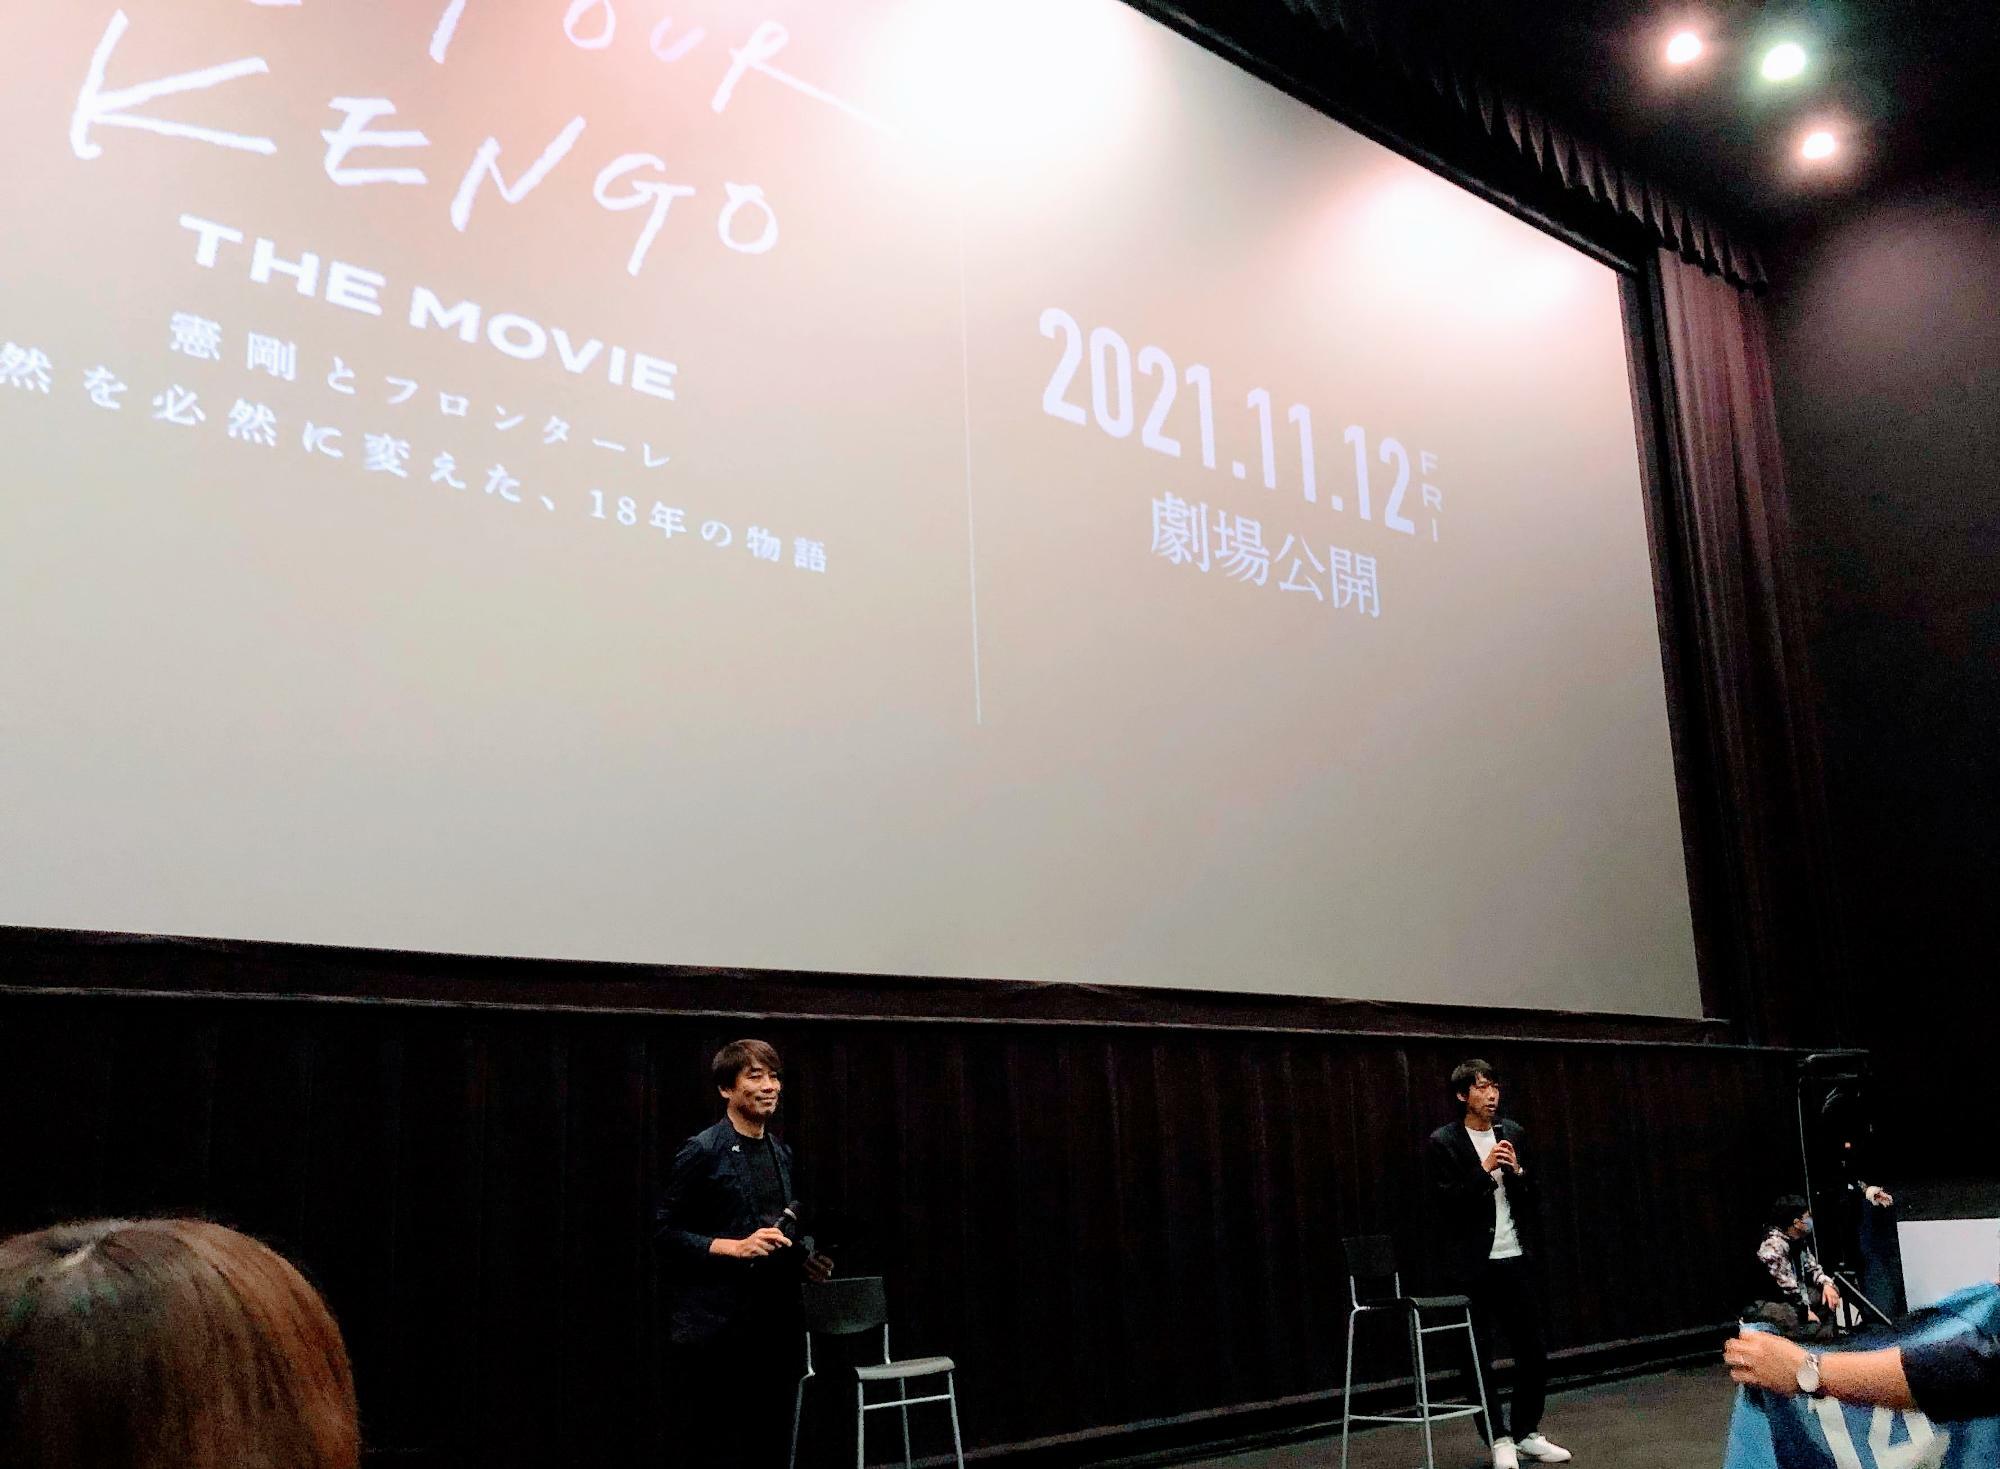 上映前に登場した中西哲生さん（左）と中村憲剛さん